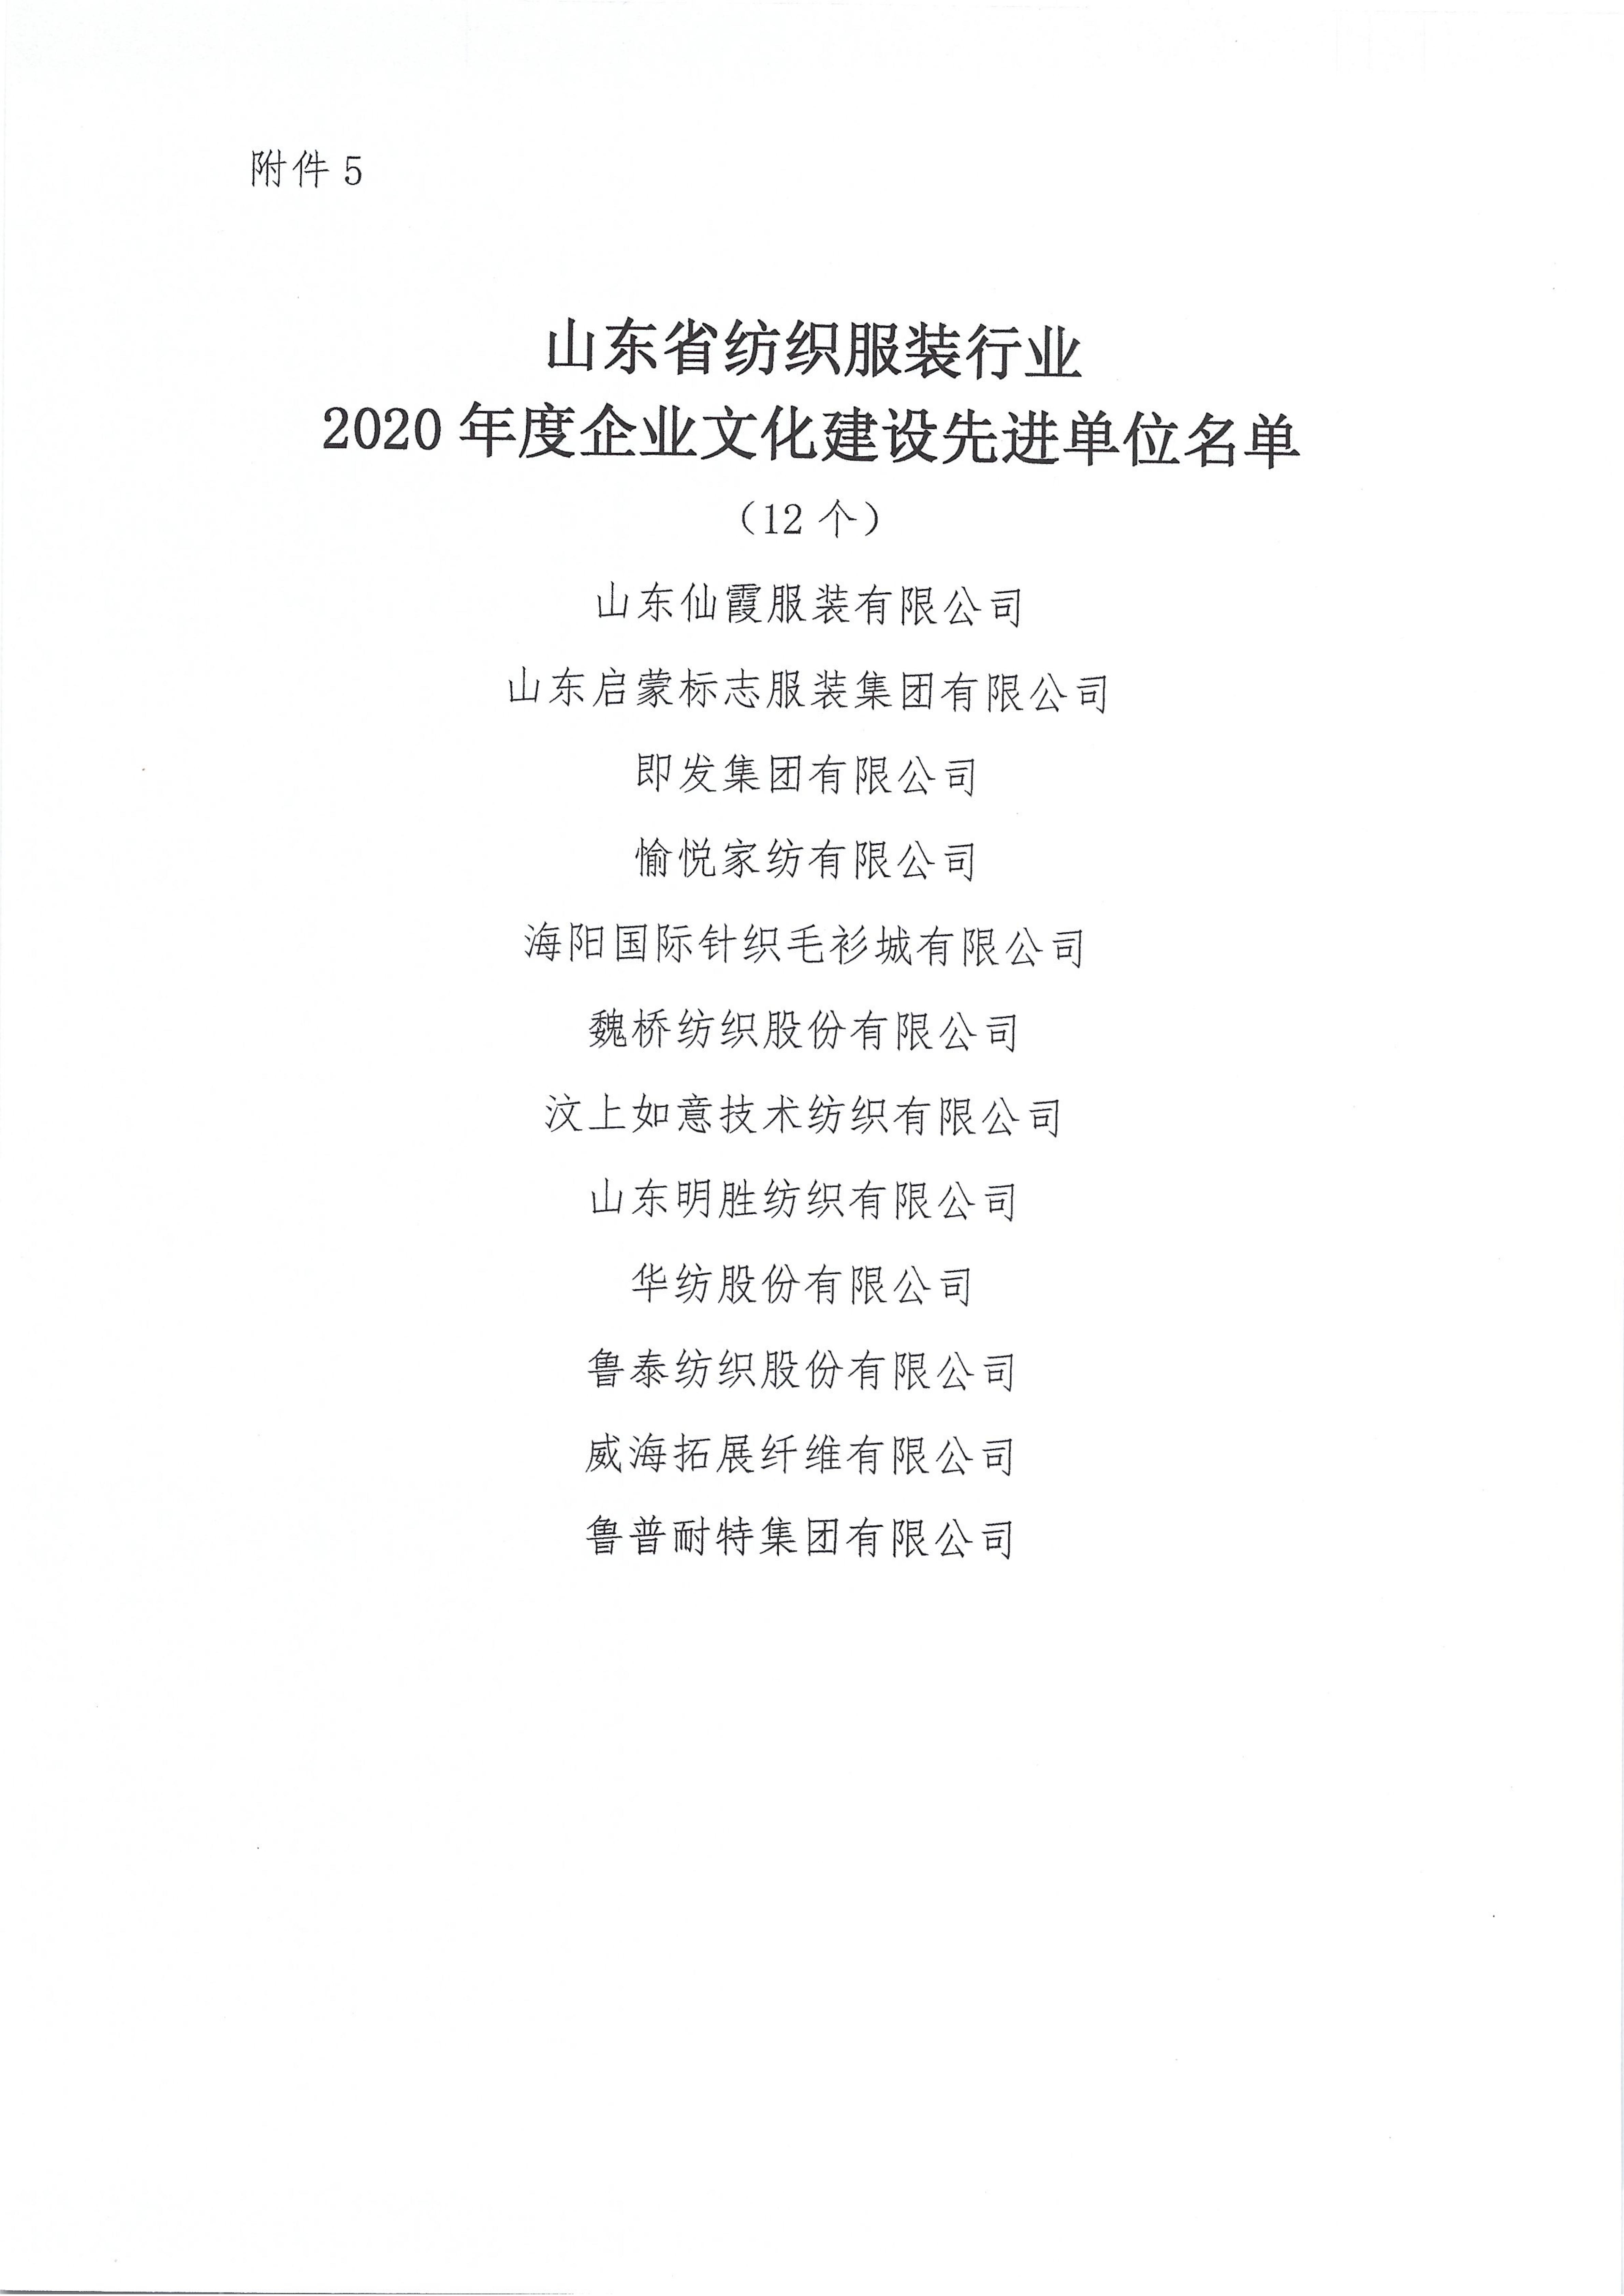 關于授予2020年度山東省紡織服裝行業新冠戰疫特別貢獻獎等獎項的決定_10.jpg